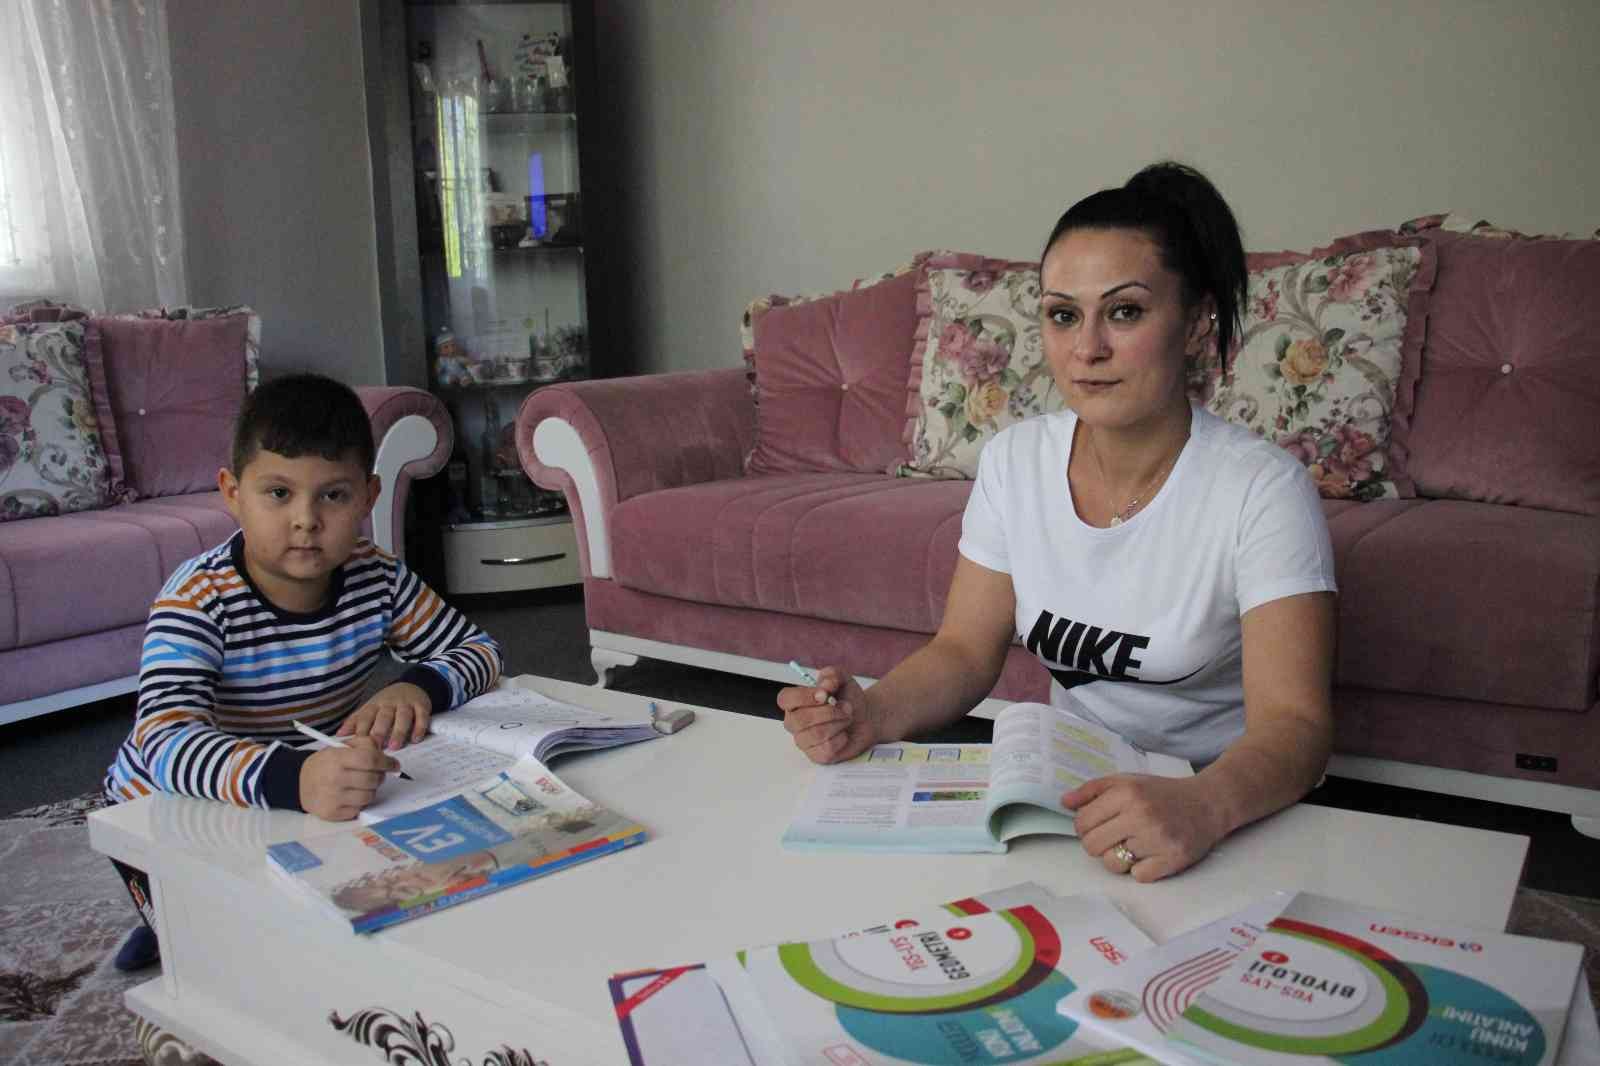 İlkokula giden oğluyla aynı masada üniversiteye hazırlanıyor #aydin